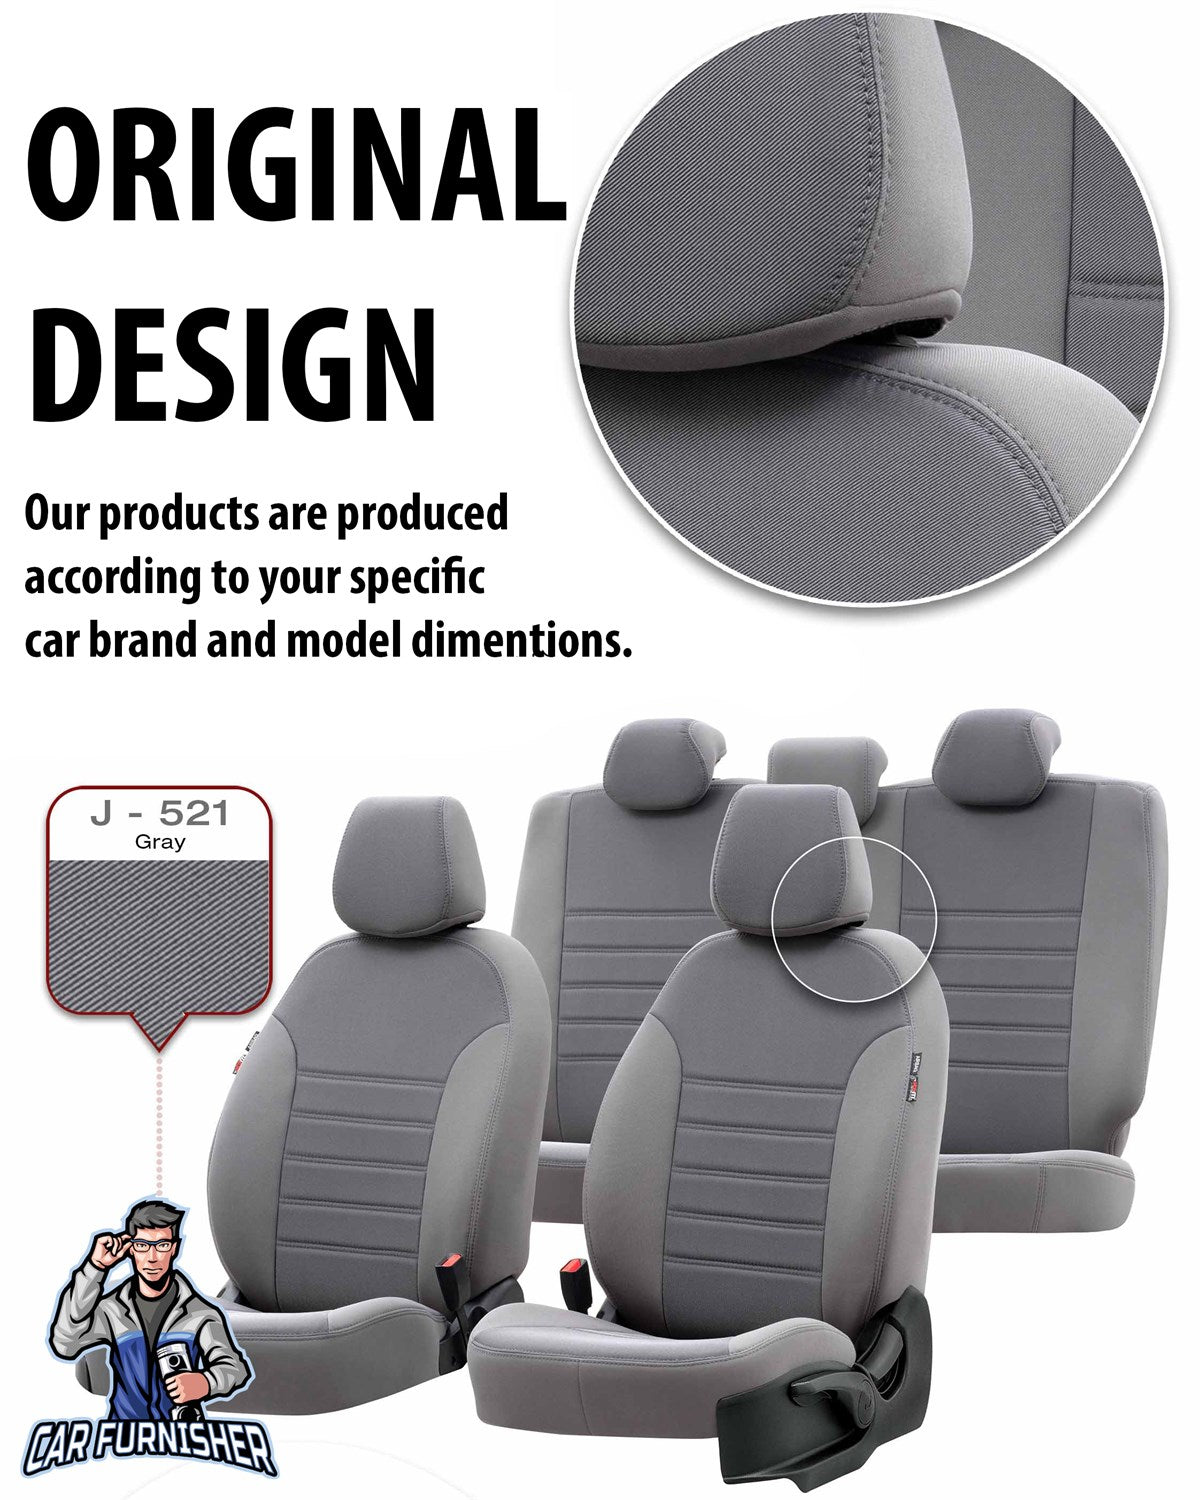 Toyota Aygo Seat Cover Original Jacquard Design Red Jacquard Fabric